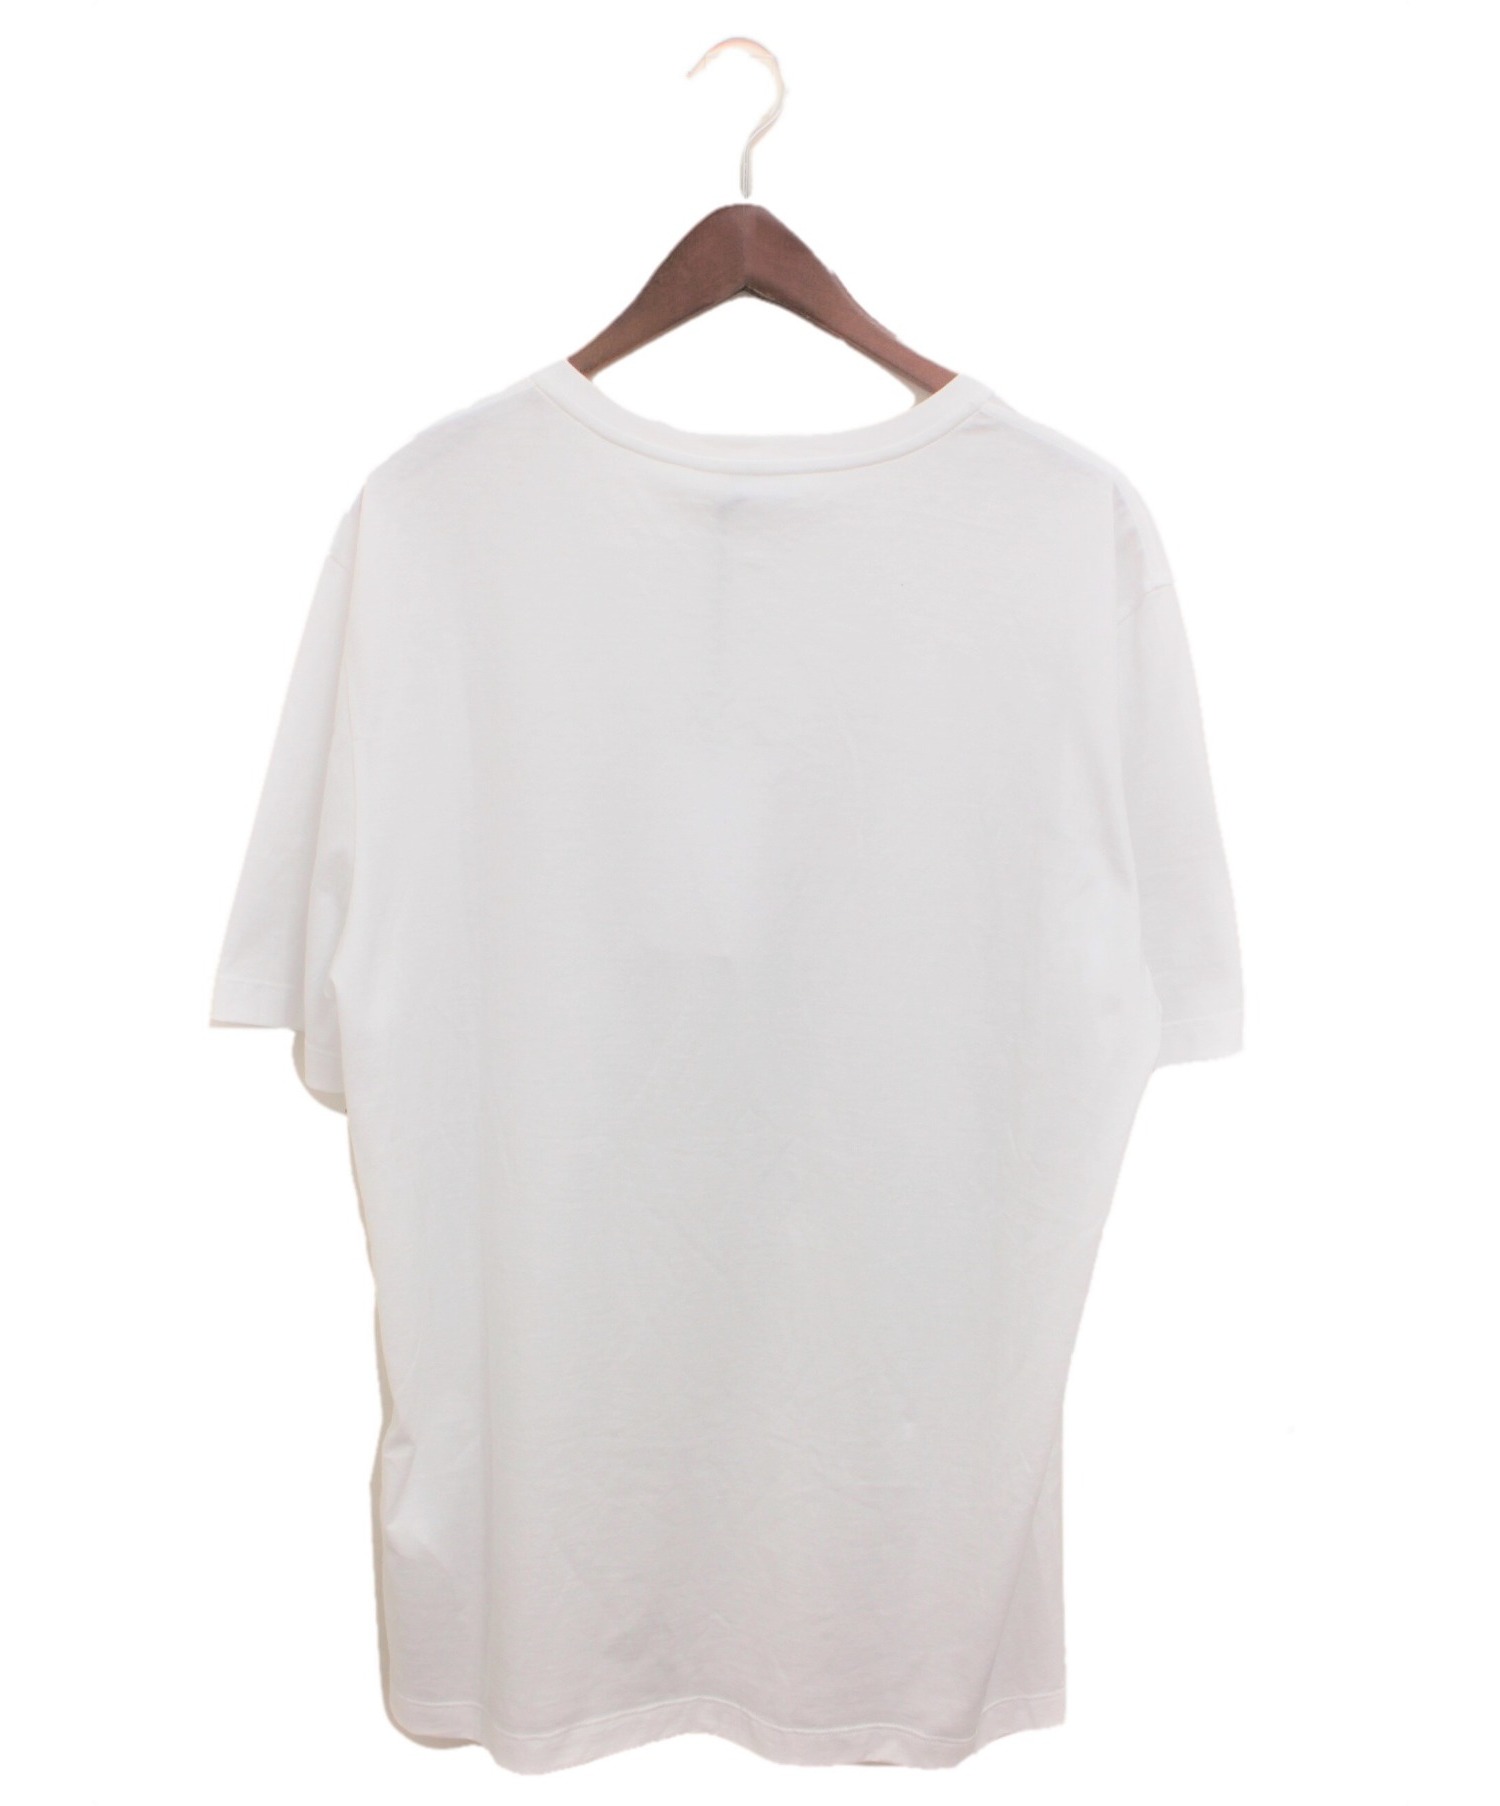 Salvatore Ferragamo (サルヴァトーレ フェラガモ) ラバープリントTシャツ ホワイト サイズ:L